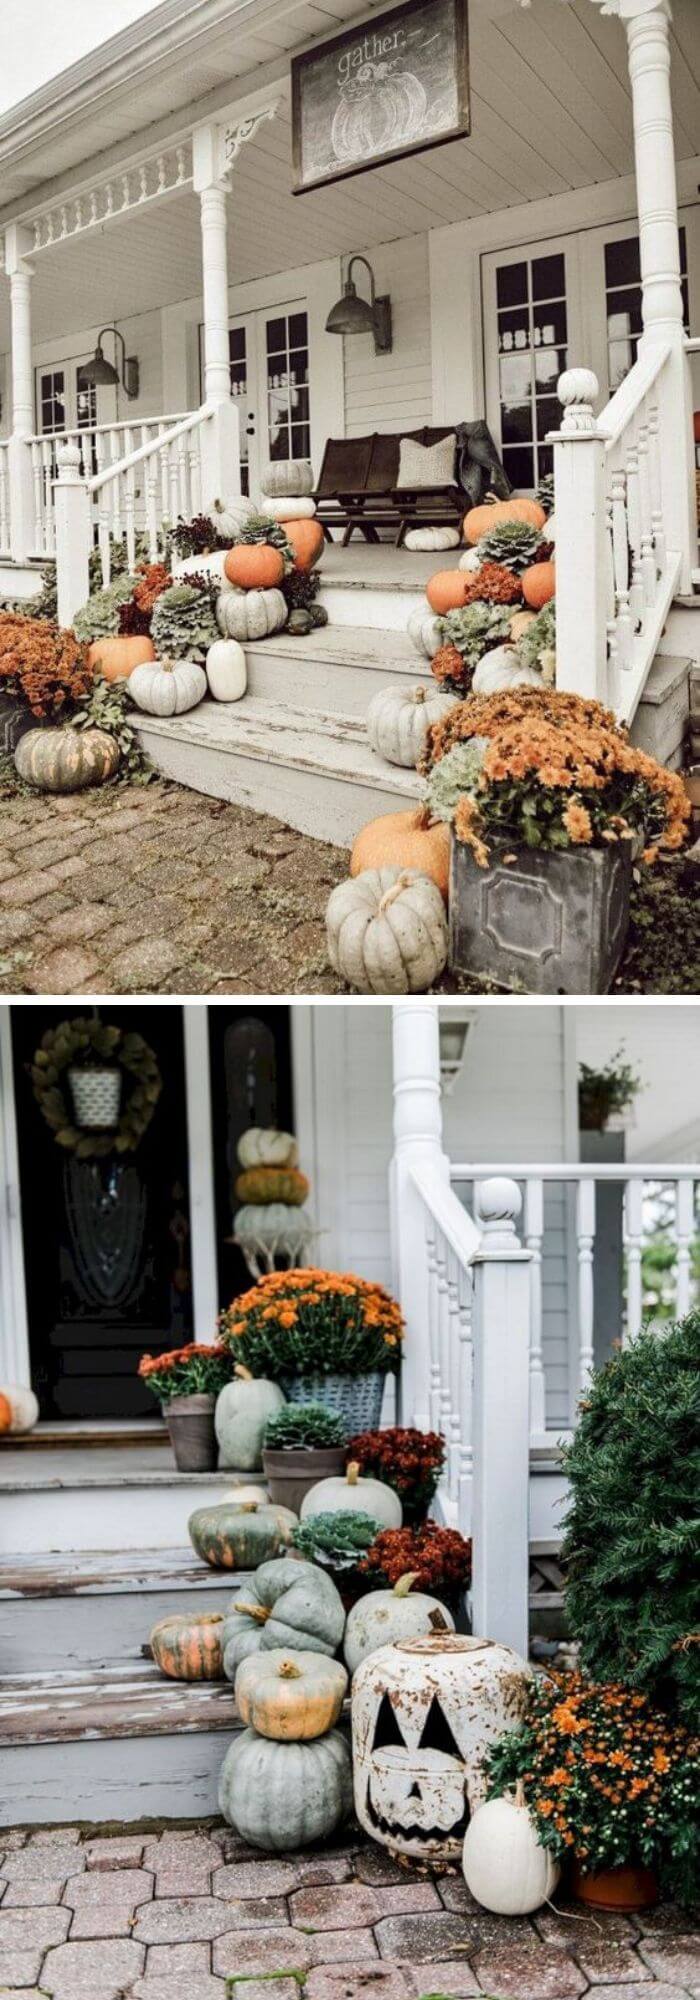 5 farmhouse fall decorating ideas